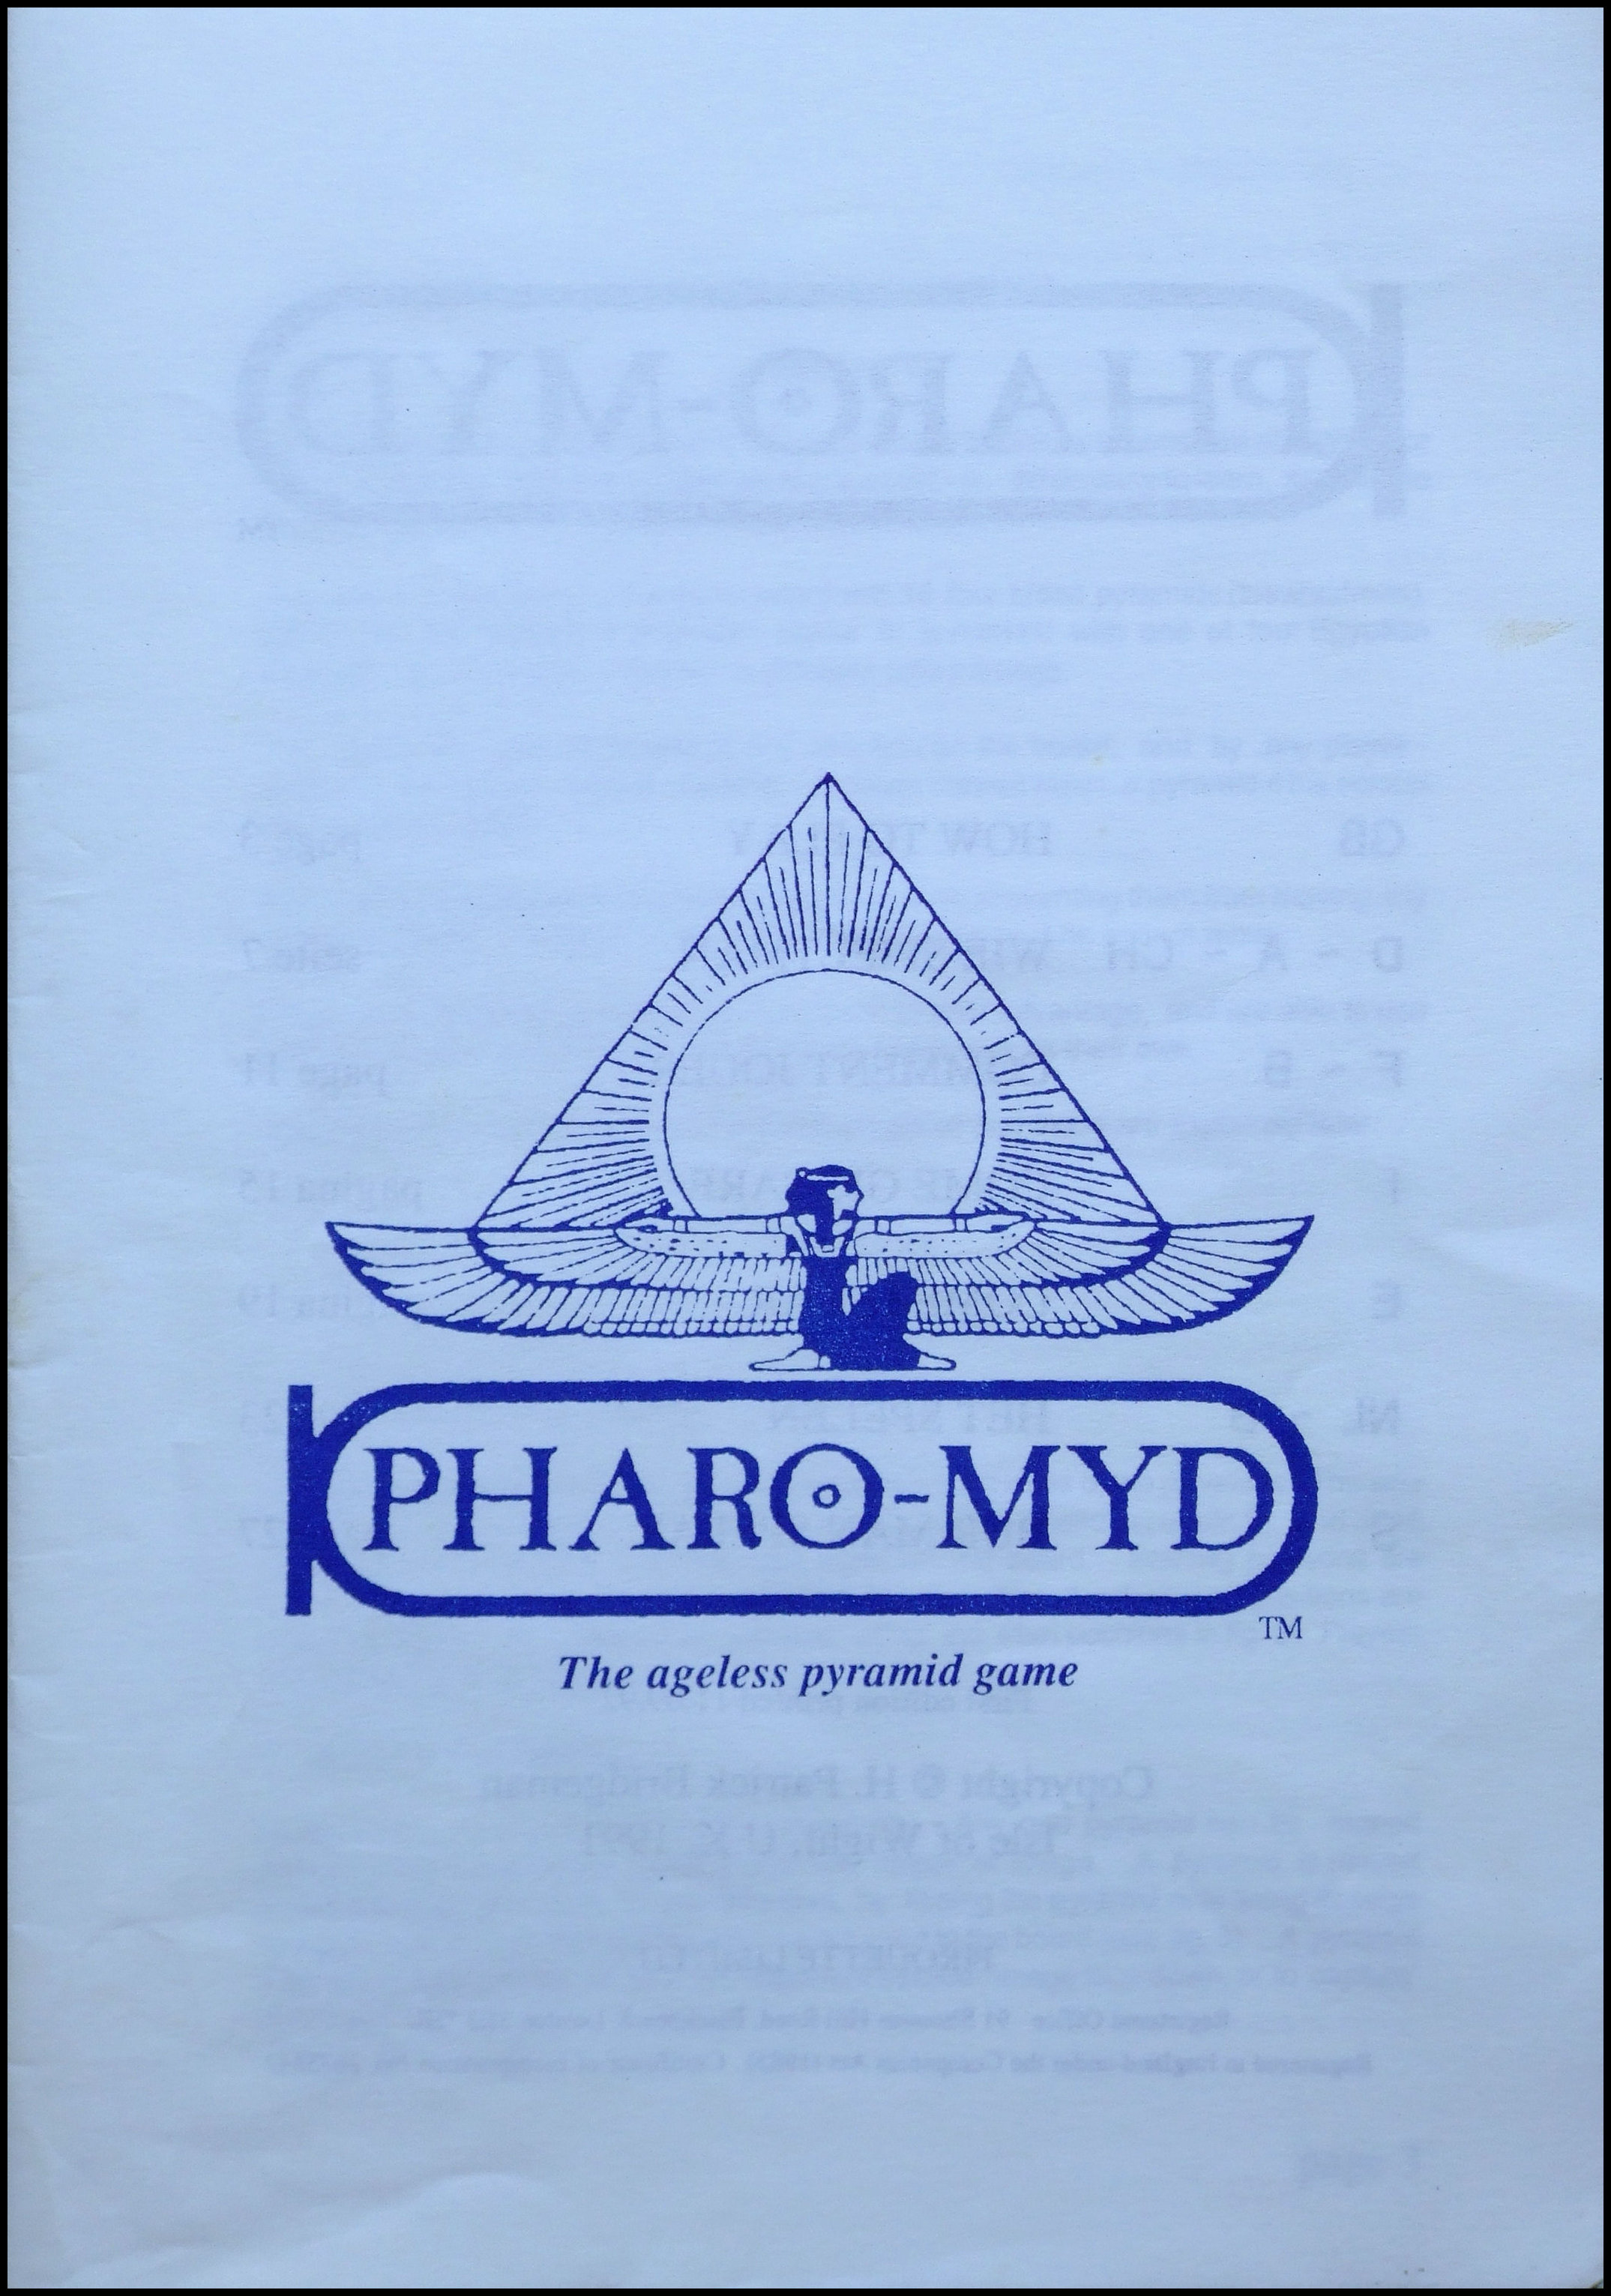 Pharomyd - Rulebook Cover